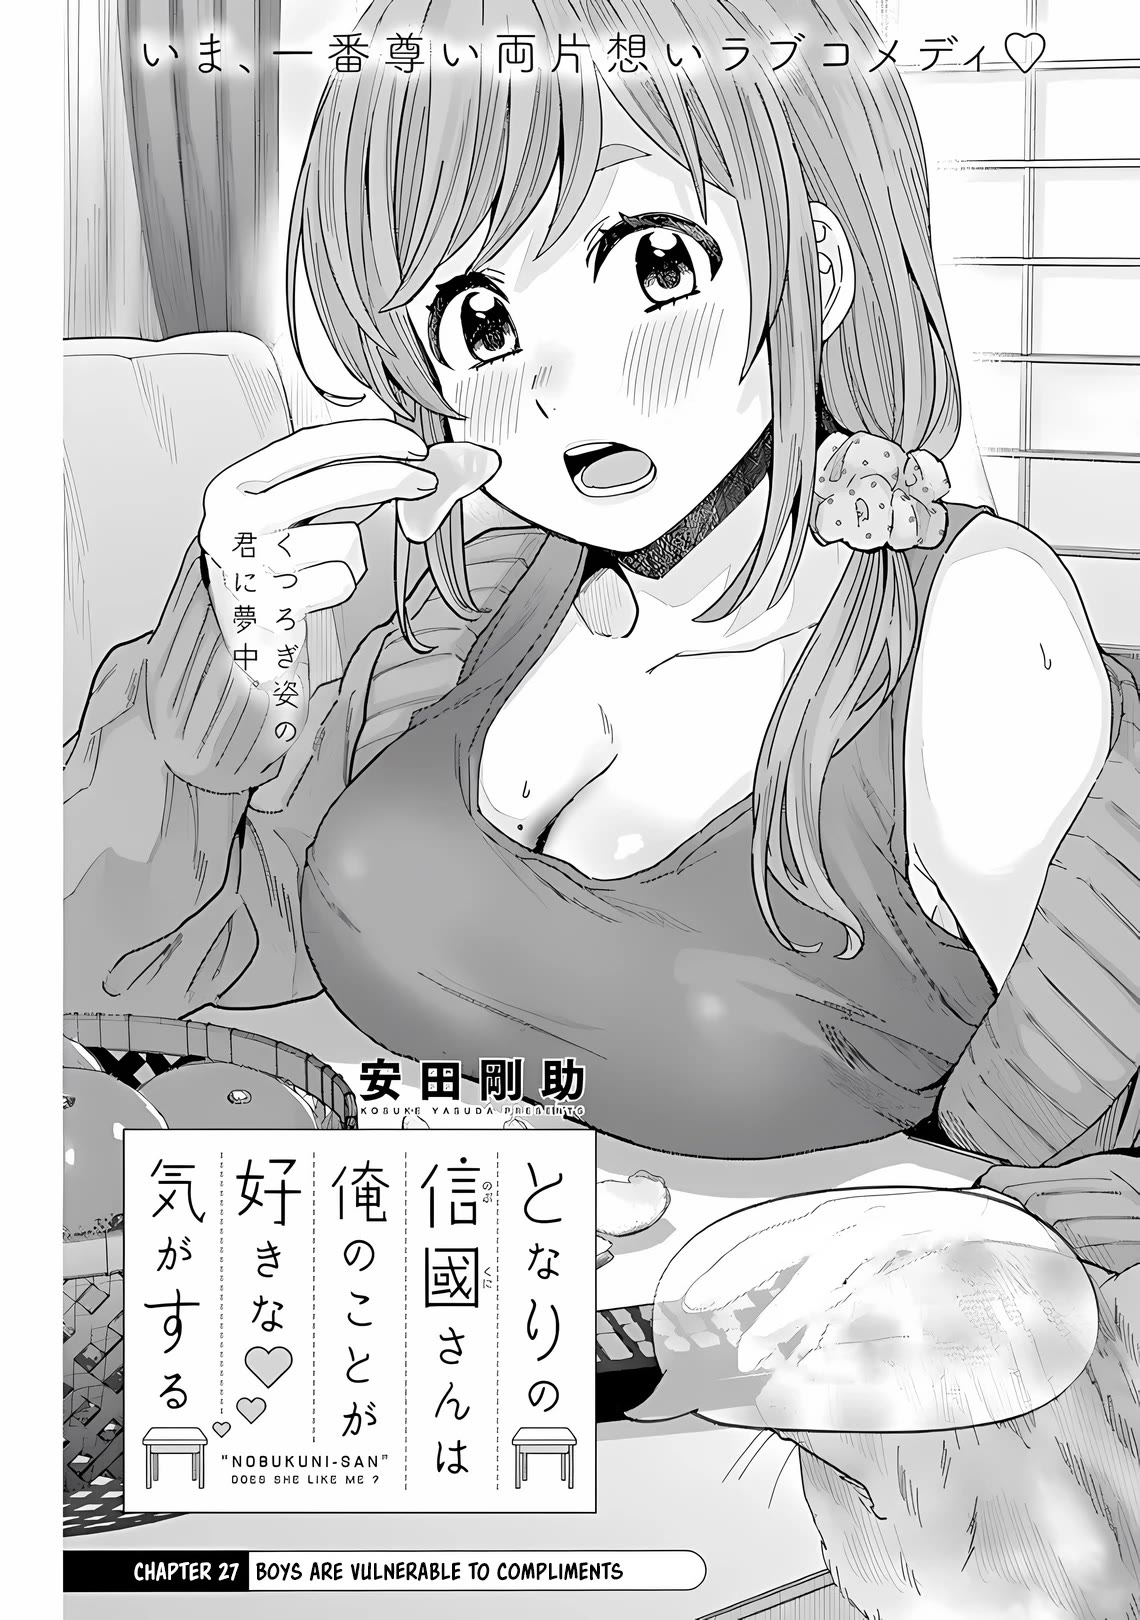 "nobukuni-San" Does She Like Me? Chapter 27 #2